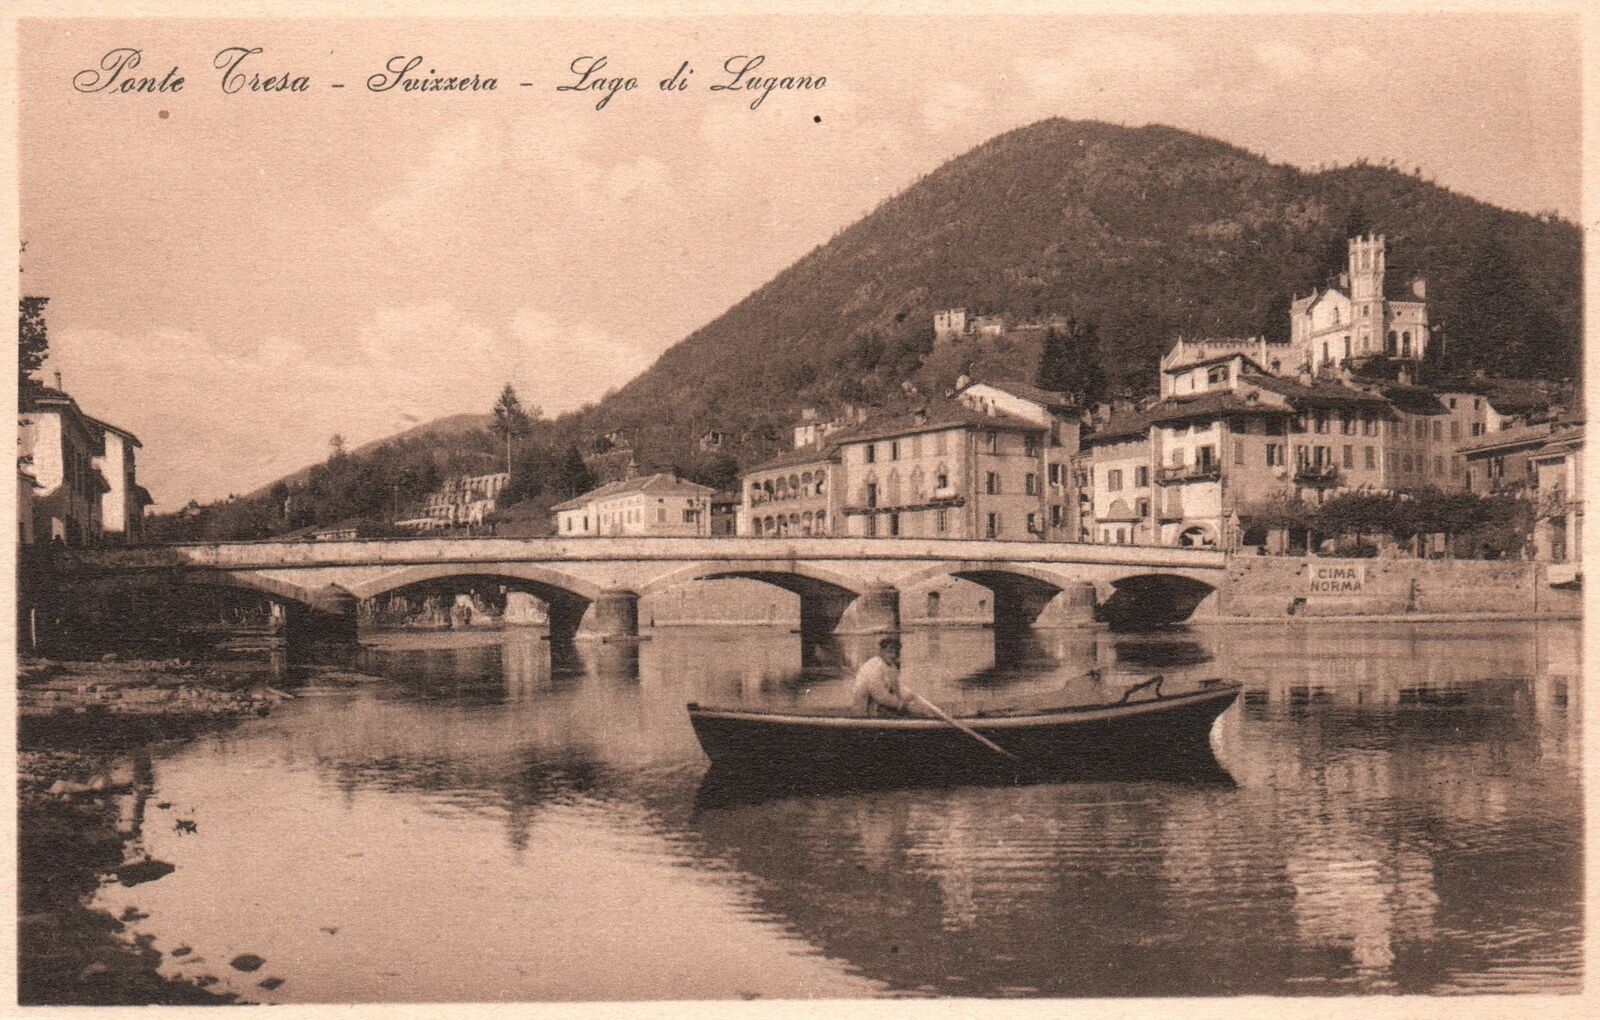 Lake Lugano Italy, Ponte Cresa Suixxera Lago di Lugano, Vintage Postcard